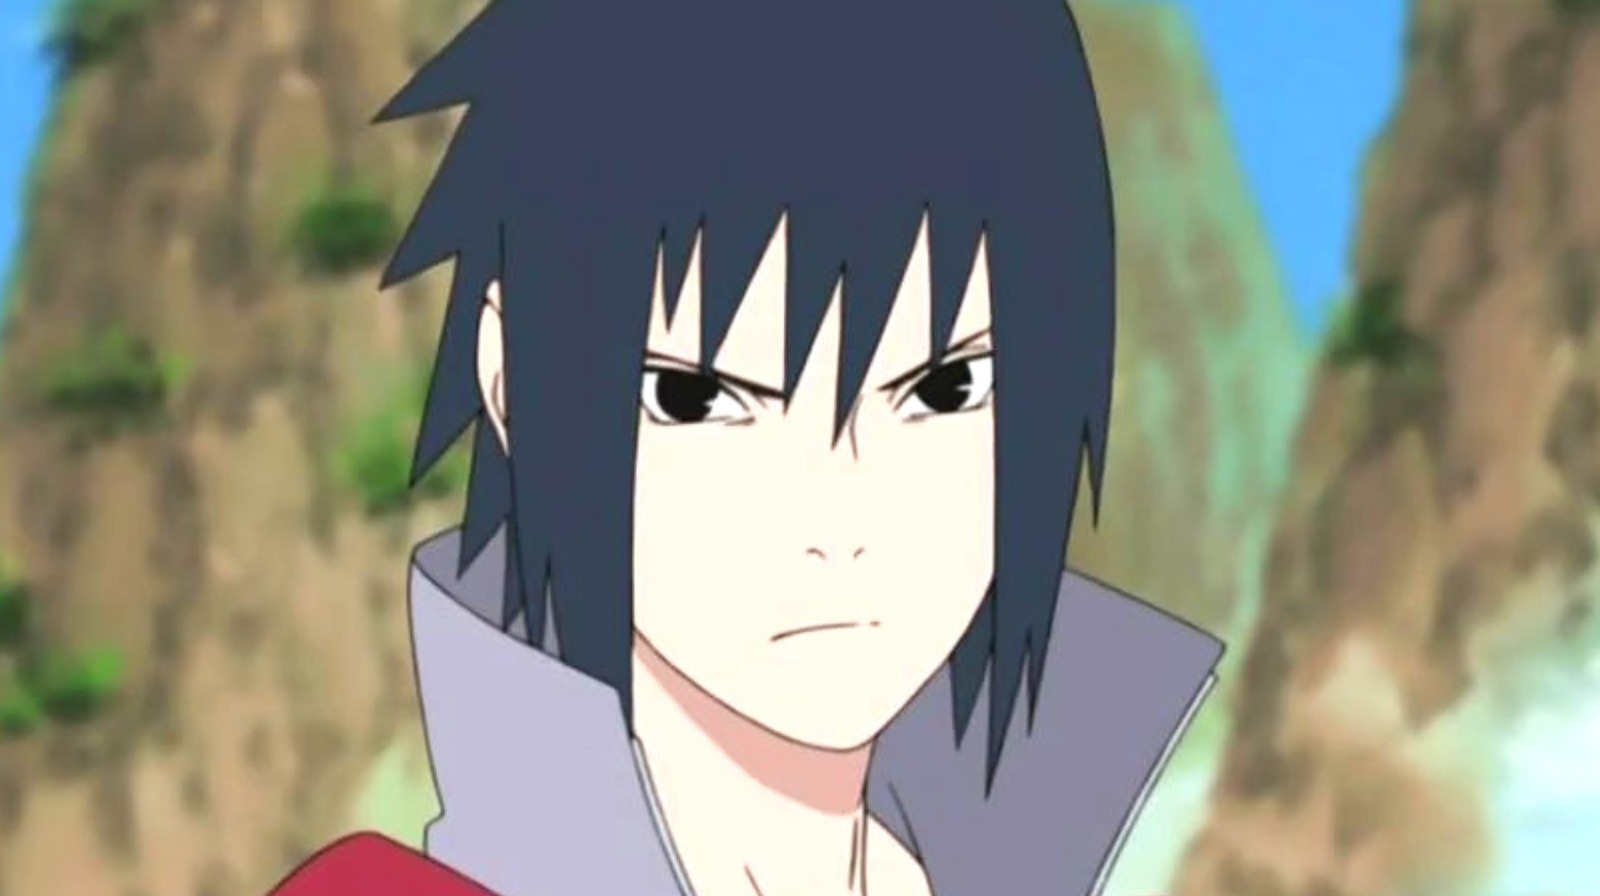 show me a picture of sasuke